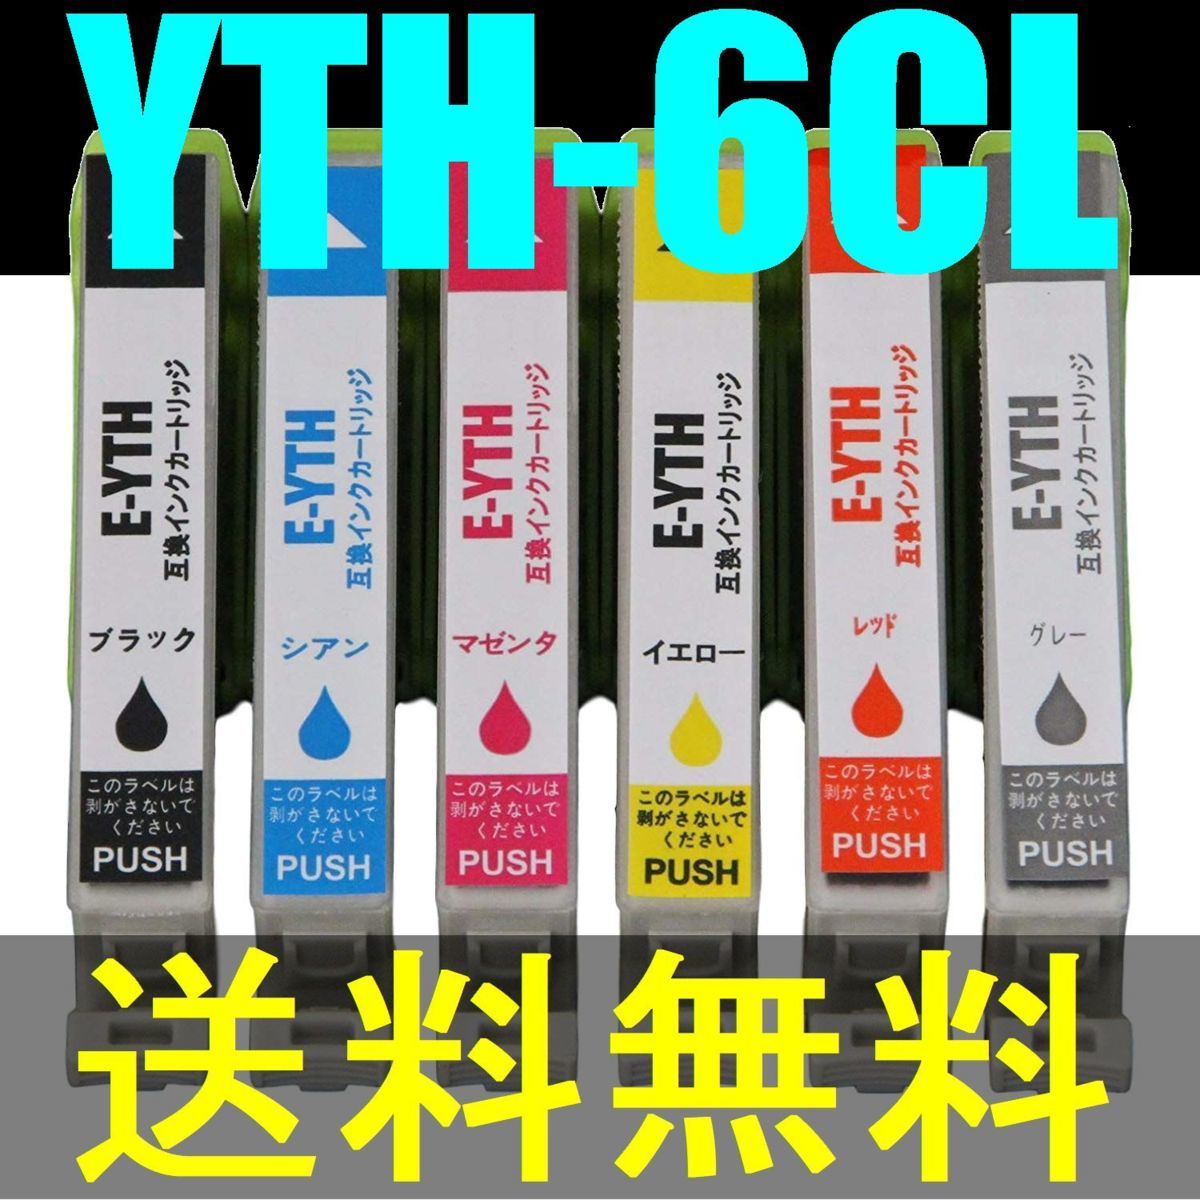 ■送料無料■YTH-6CL ヨット6色セット EPSON互換インク EP-10VA/EP-30VA用 YTH-BK YTH-C YTH-M YTH-Y YTH-R YTH-GY ICチップ付き